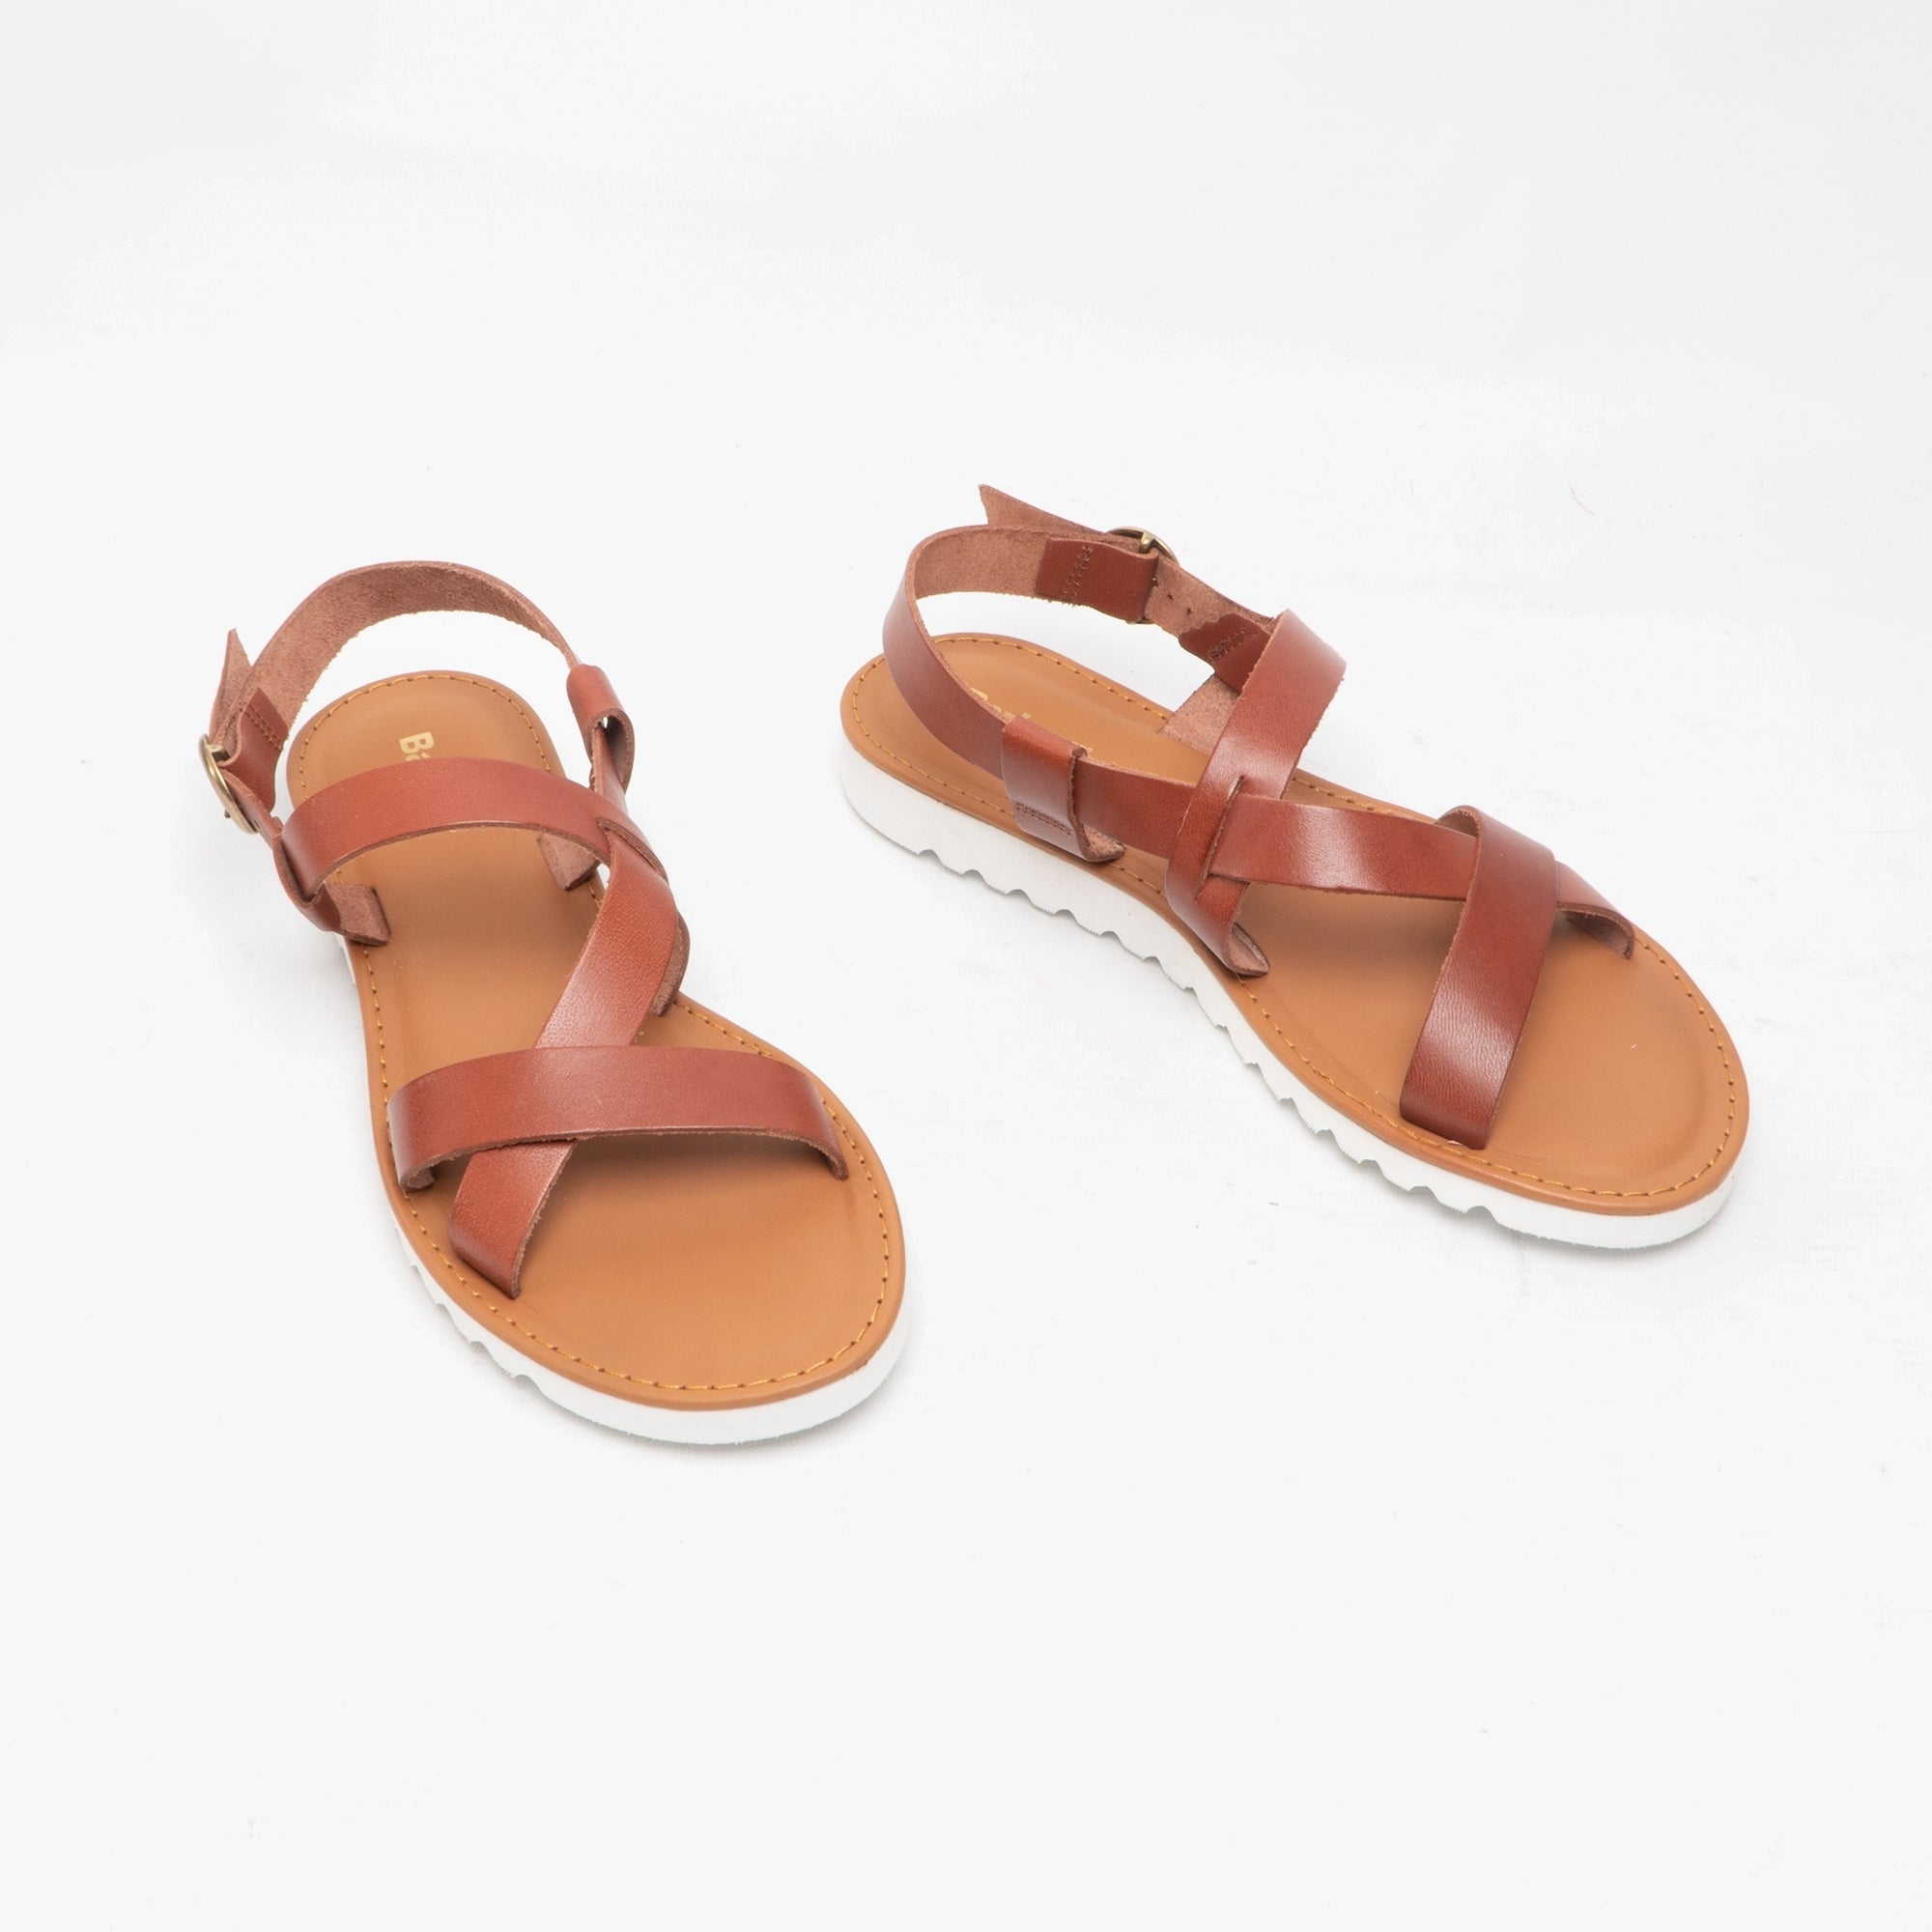 Sandside Leather Sandals - Dark Tan